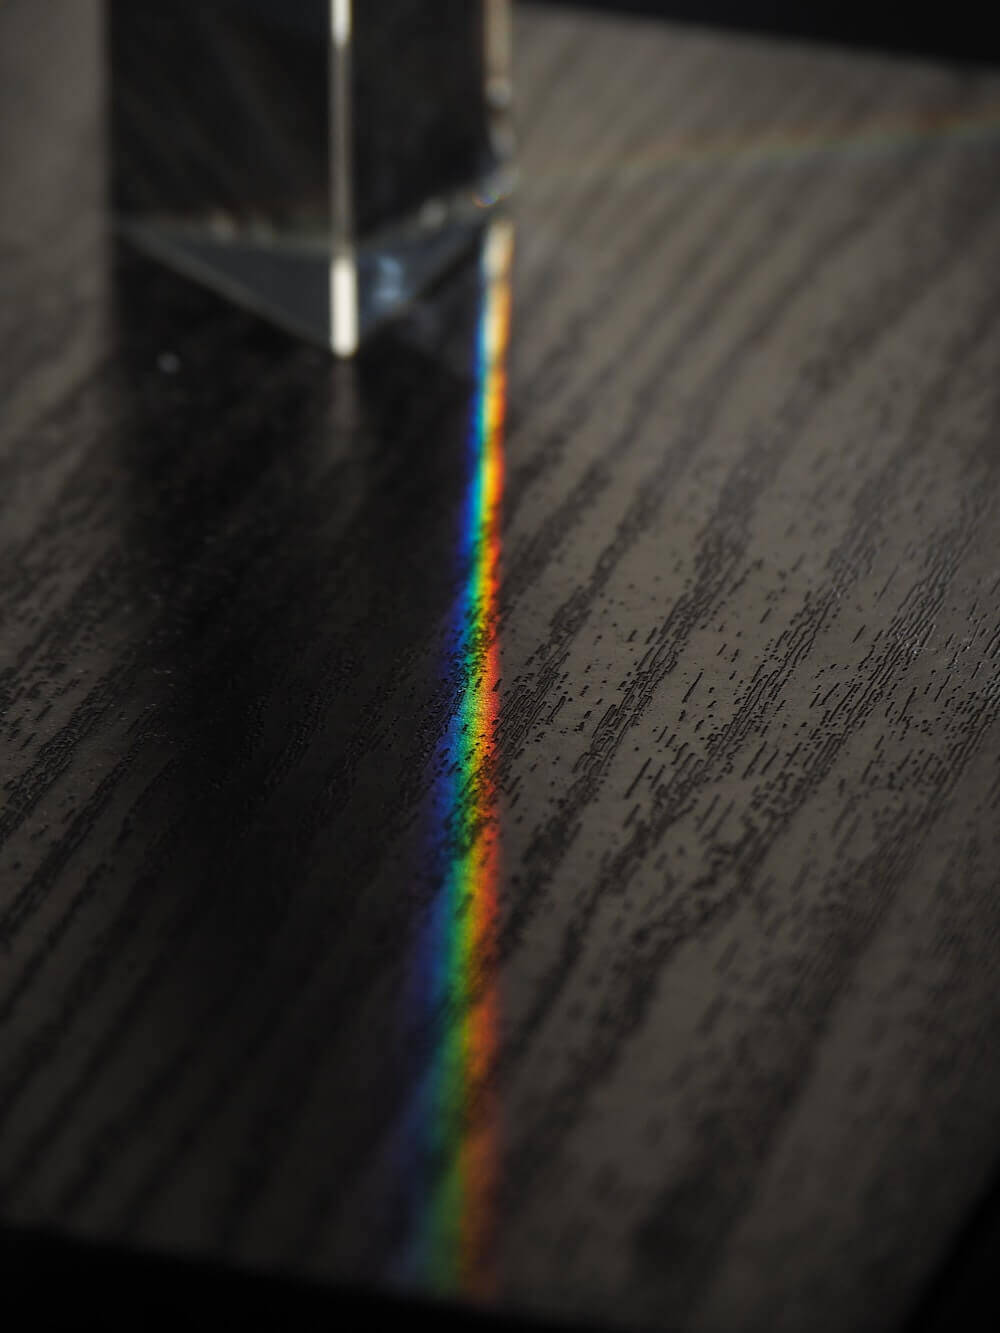 Farben des Regenbogens nach Brechung am Prisma